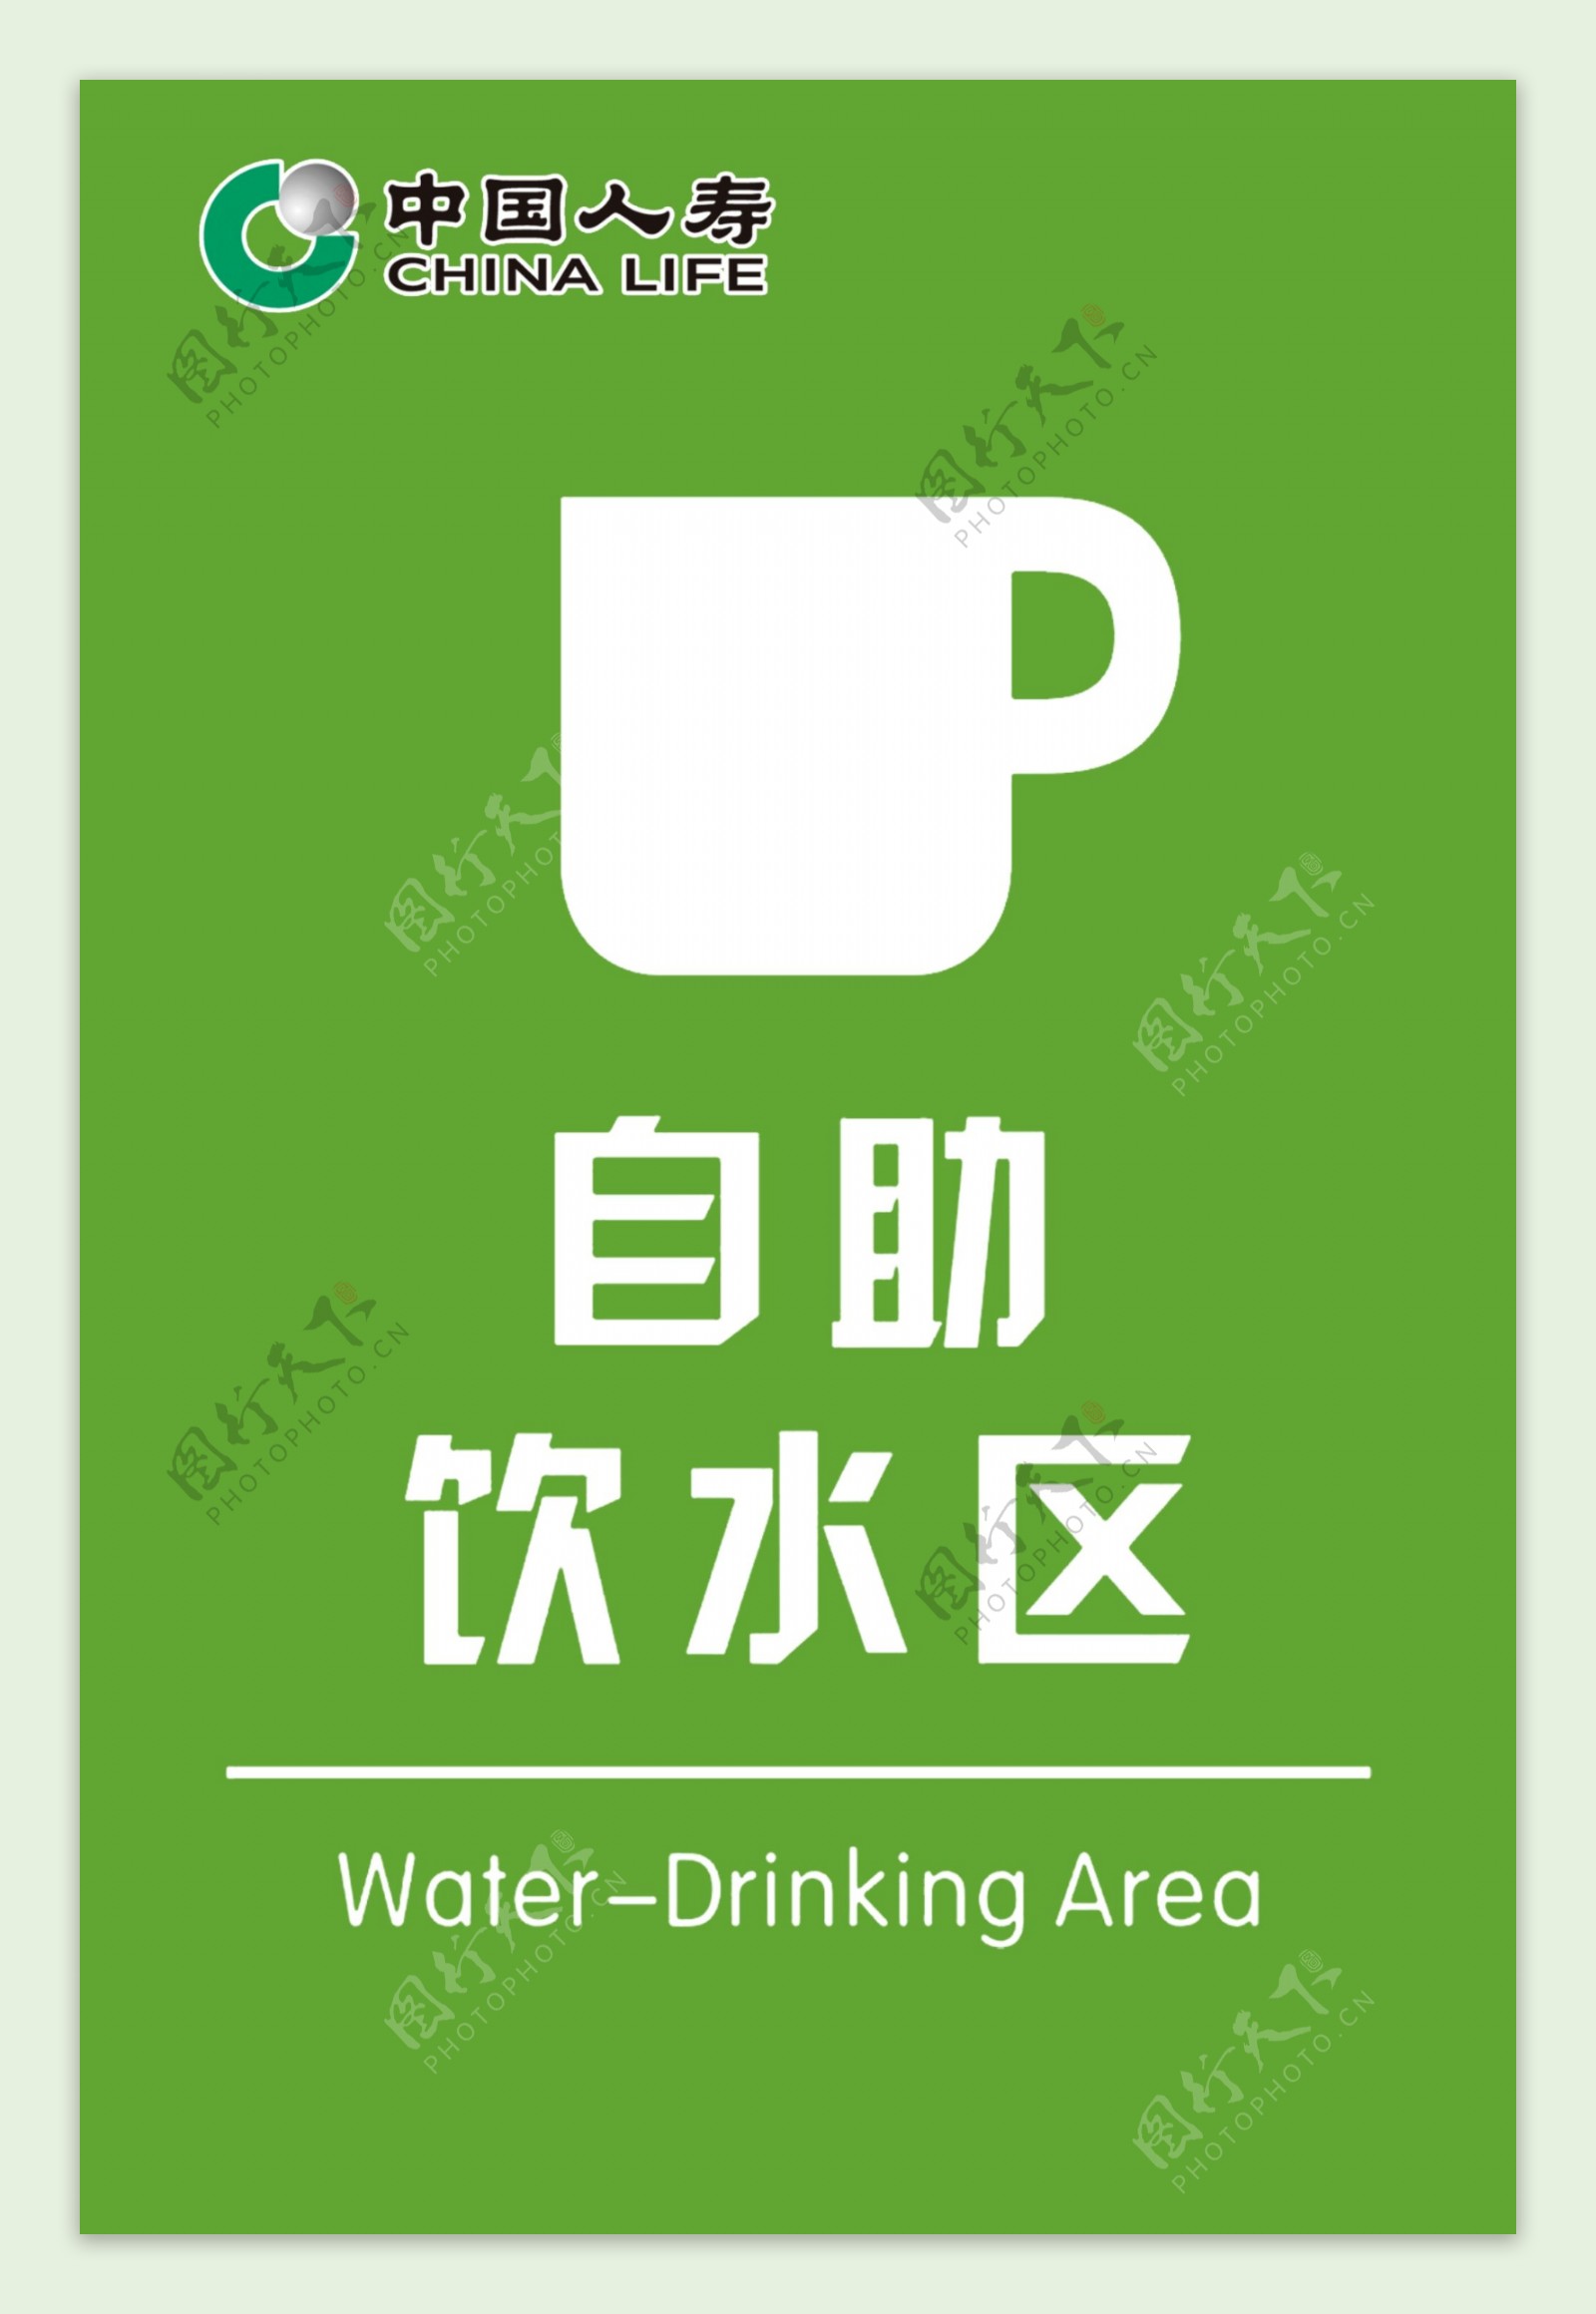 中国人寿自助饮水区